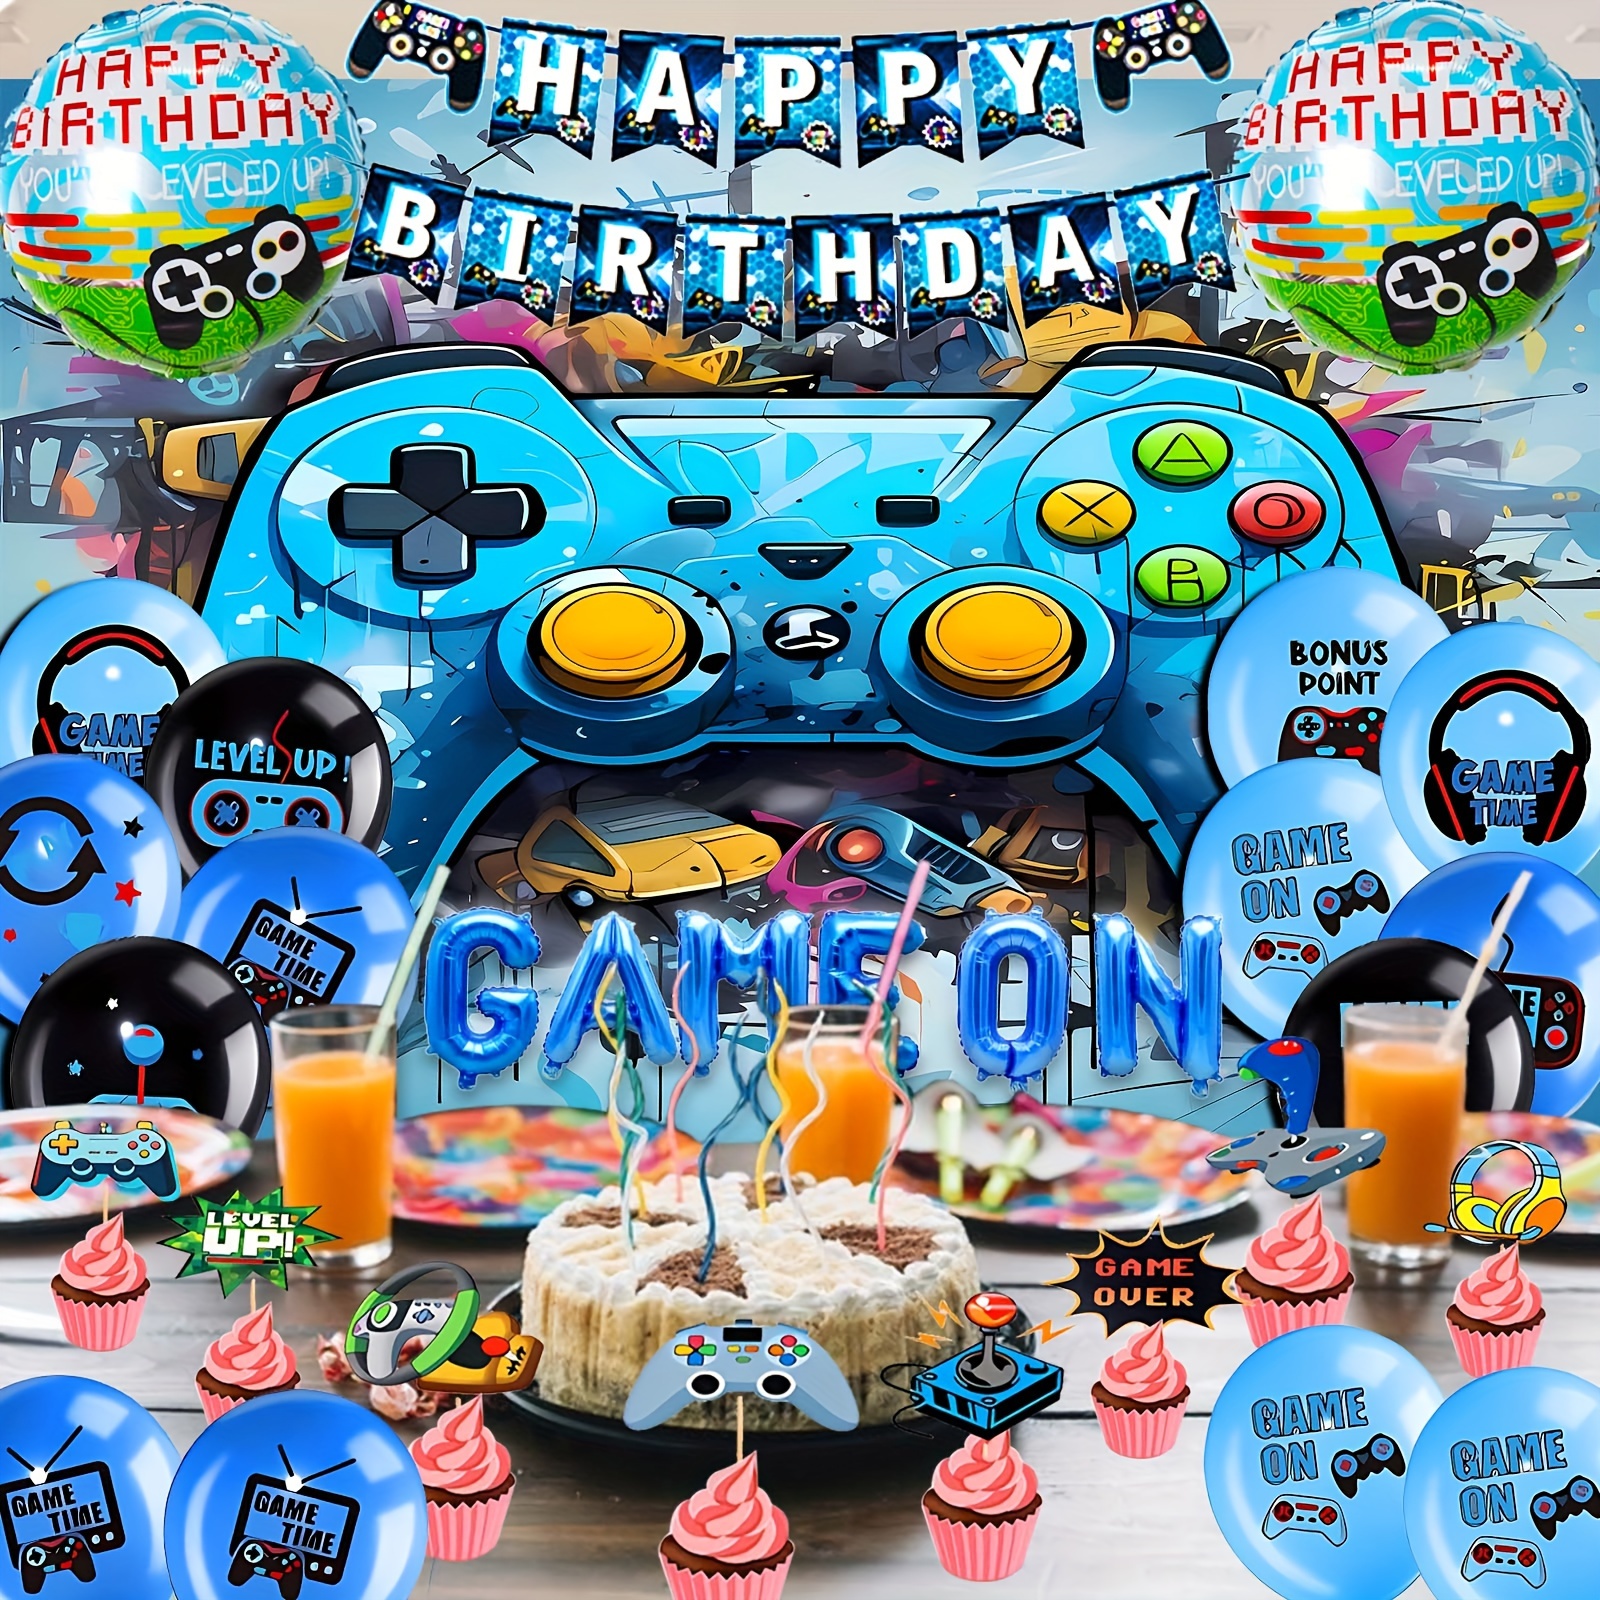  Suministros de fiesta de cumpleaños de Sonic - Los suministros  de fiesta de Sonic incluyen telón de fondo, pancarta de feliz cumpleaños,  adornos para cupcakes de pasteles, globos, espirales colgantes para